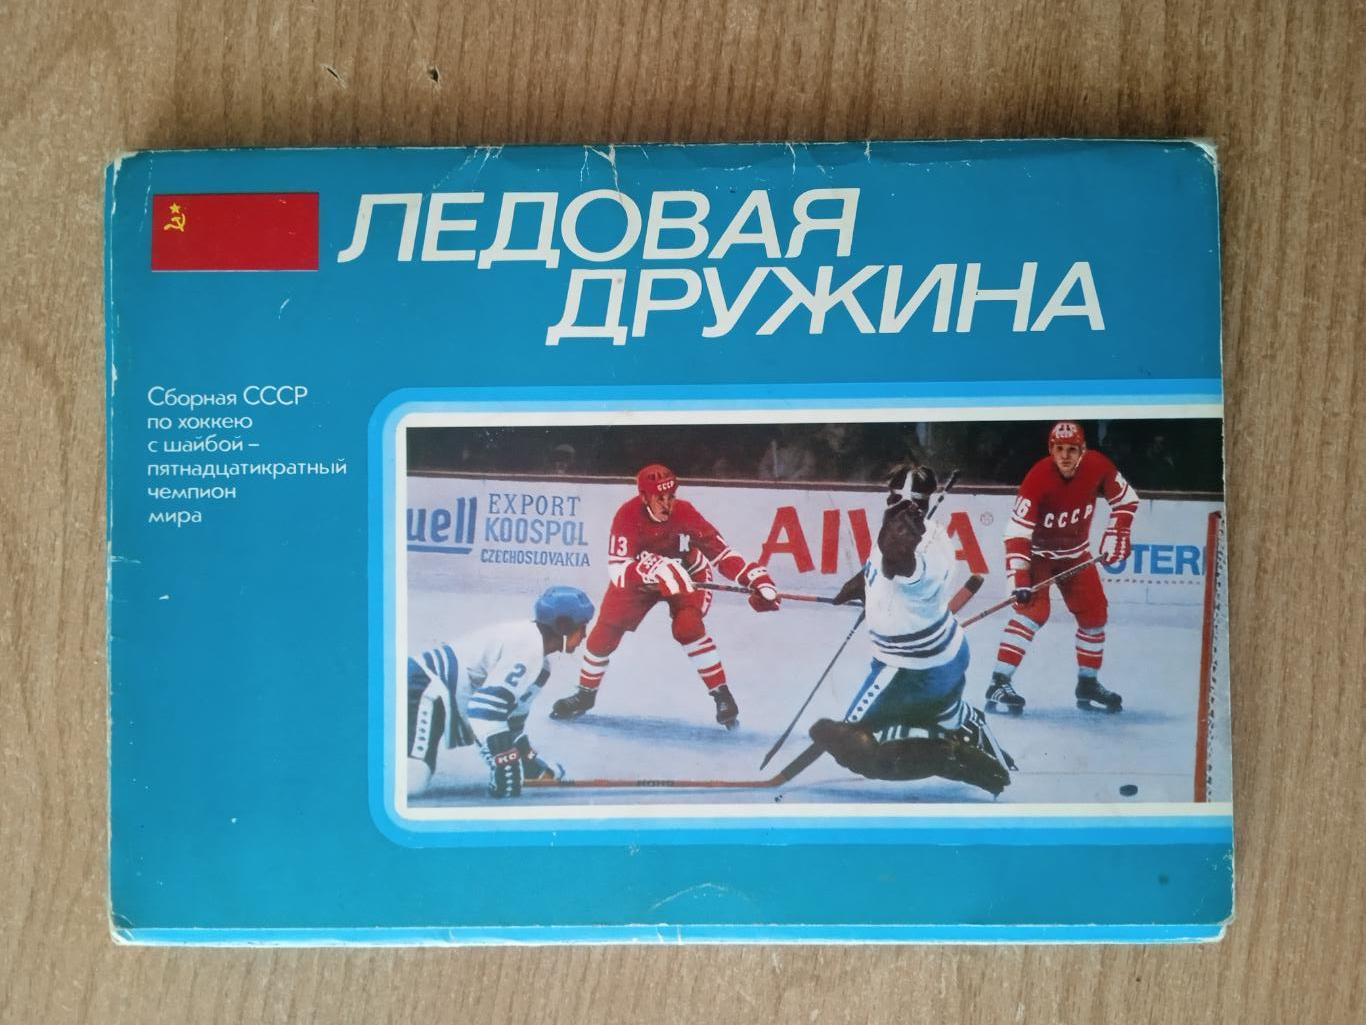 хоккей.СССР-Чемпион мира 1978г.